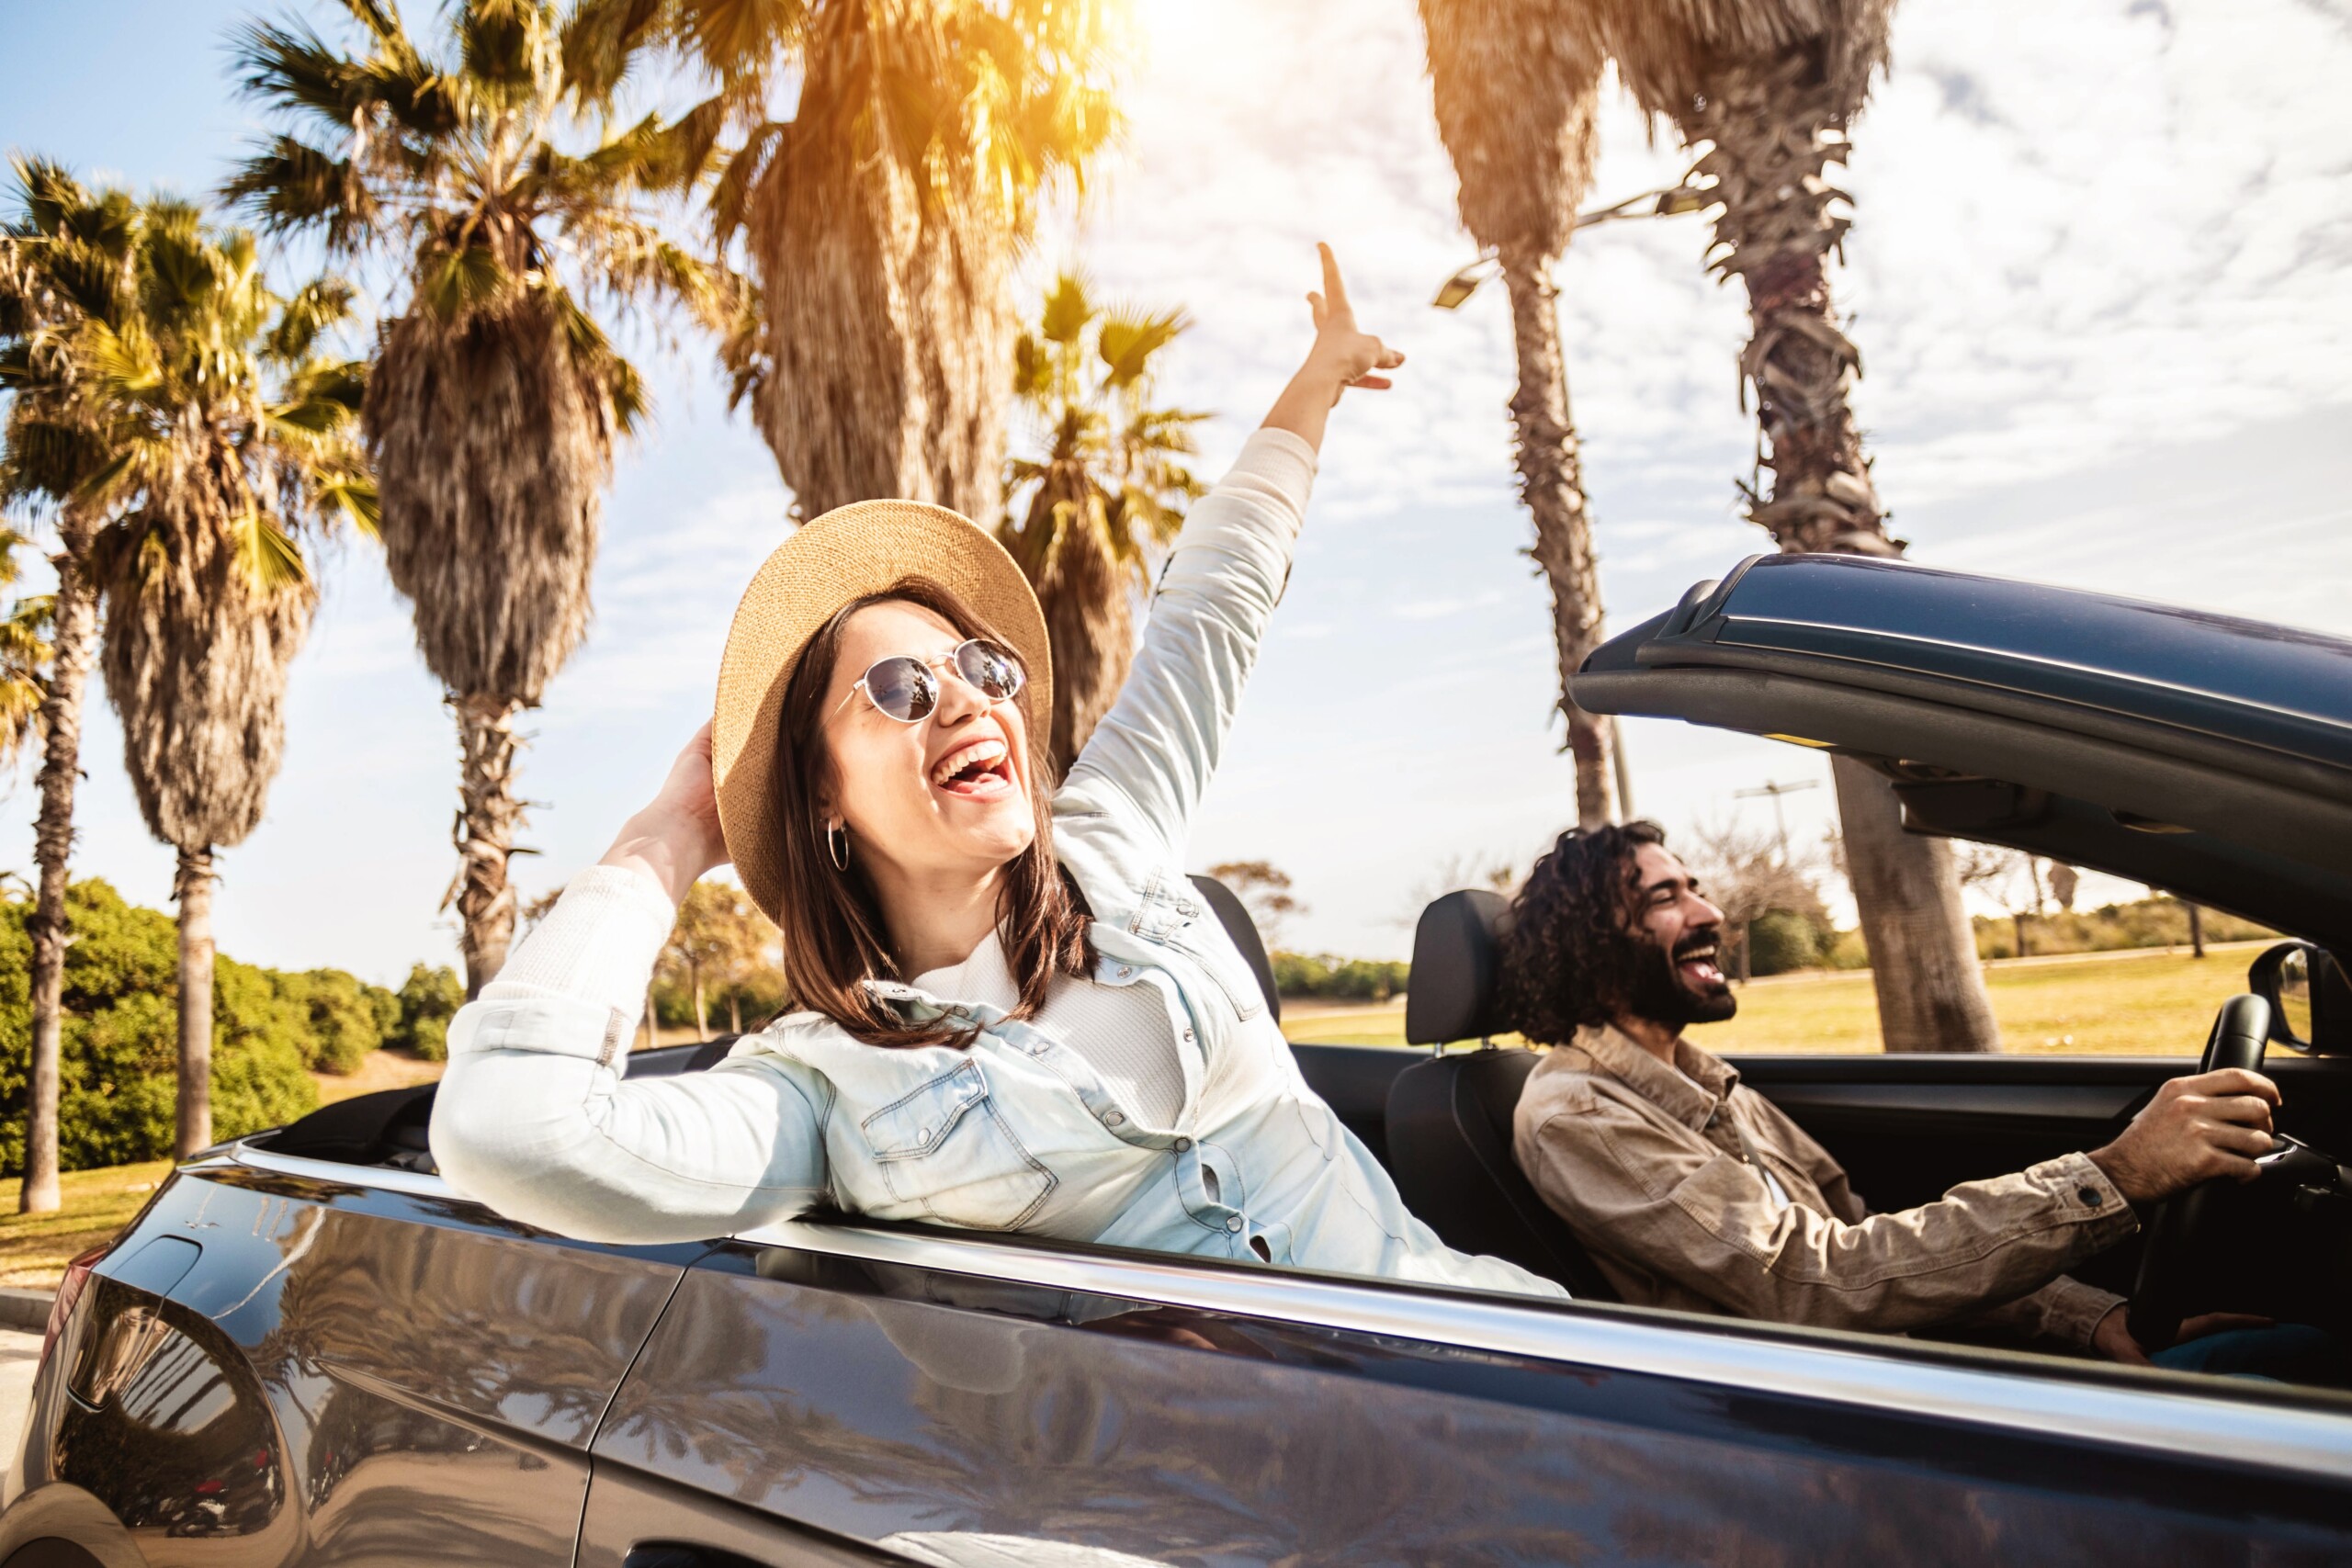 Szczęśliwa młoda para ciesząca się letnimi wakacjami na kabriolecie - mężczyzna i kobieta śmieją się podczas jazdy kabrioletem na zewnątrz., licencja: shutterstock/By Xavier+Lorenzo